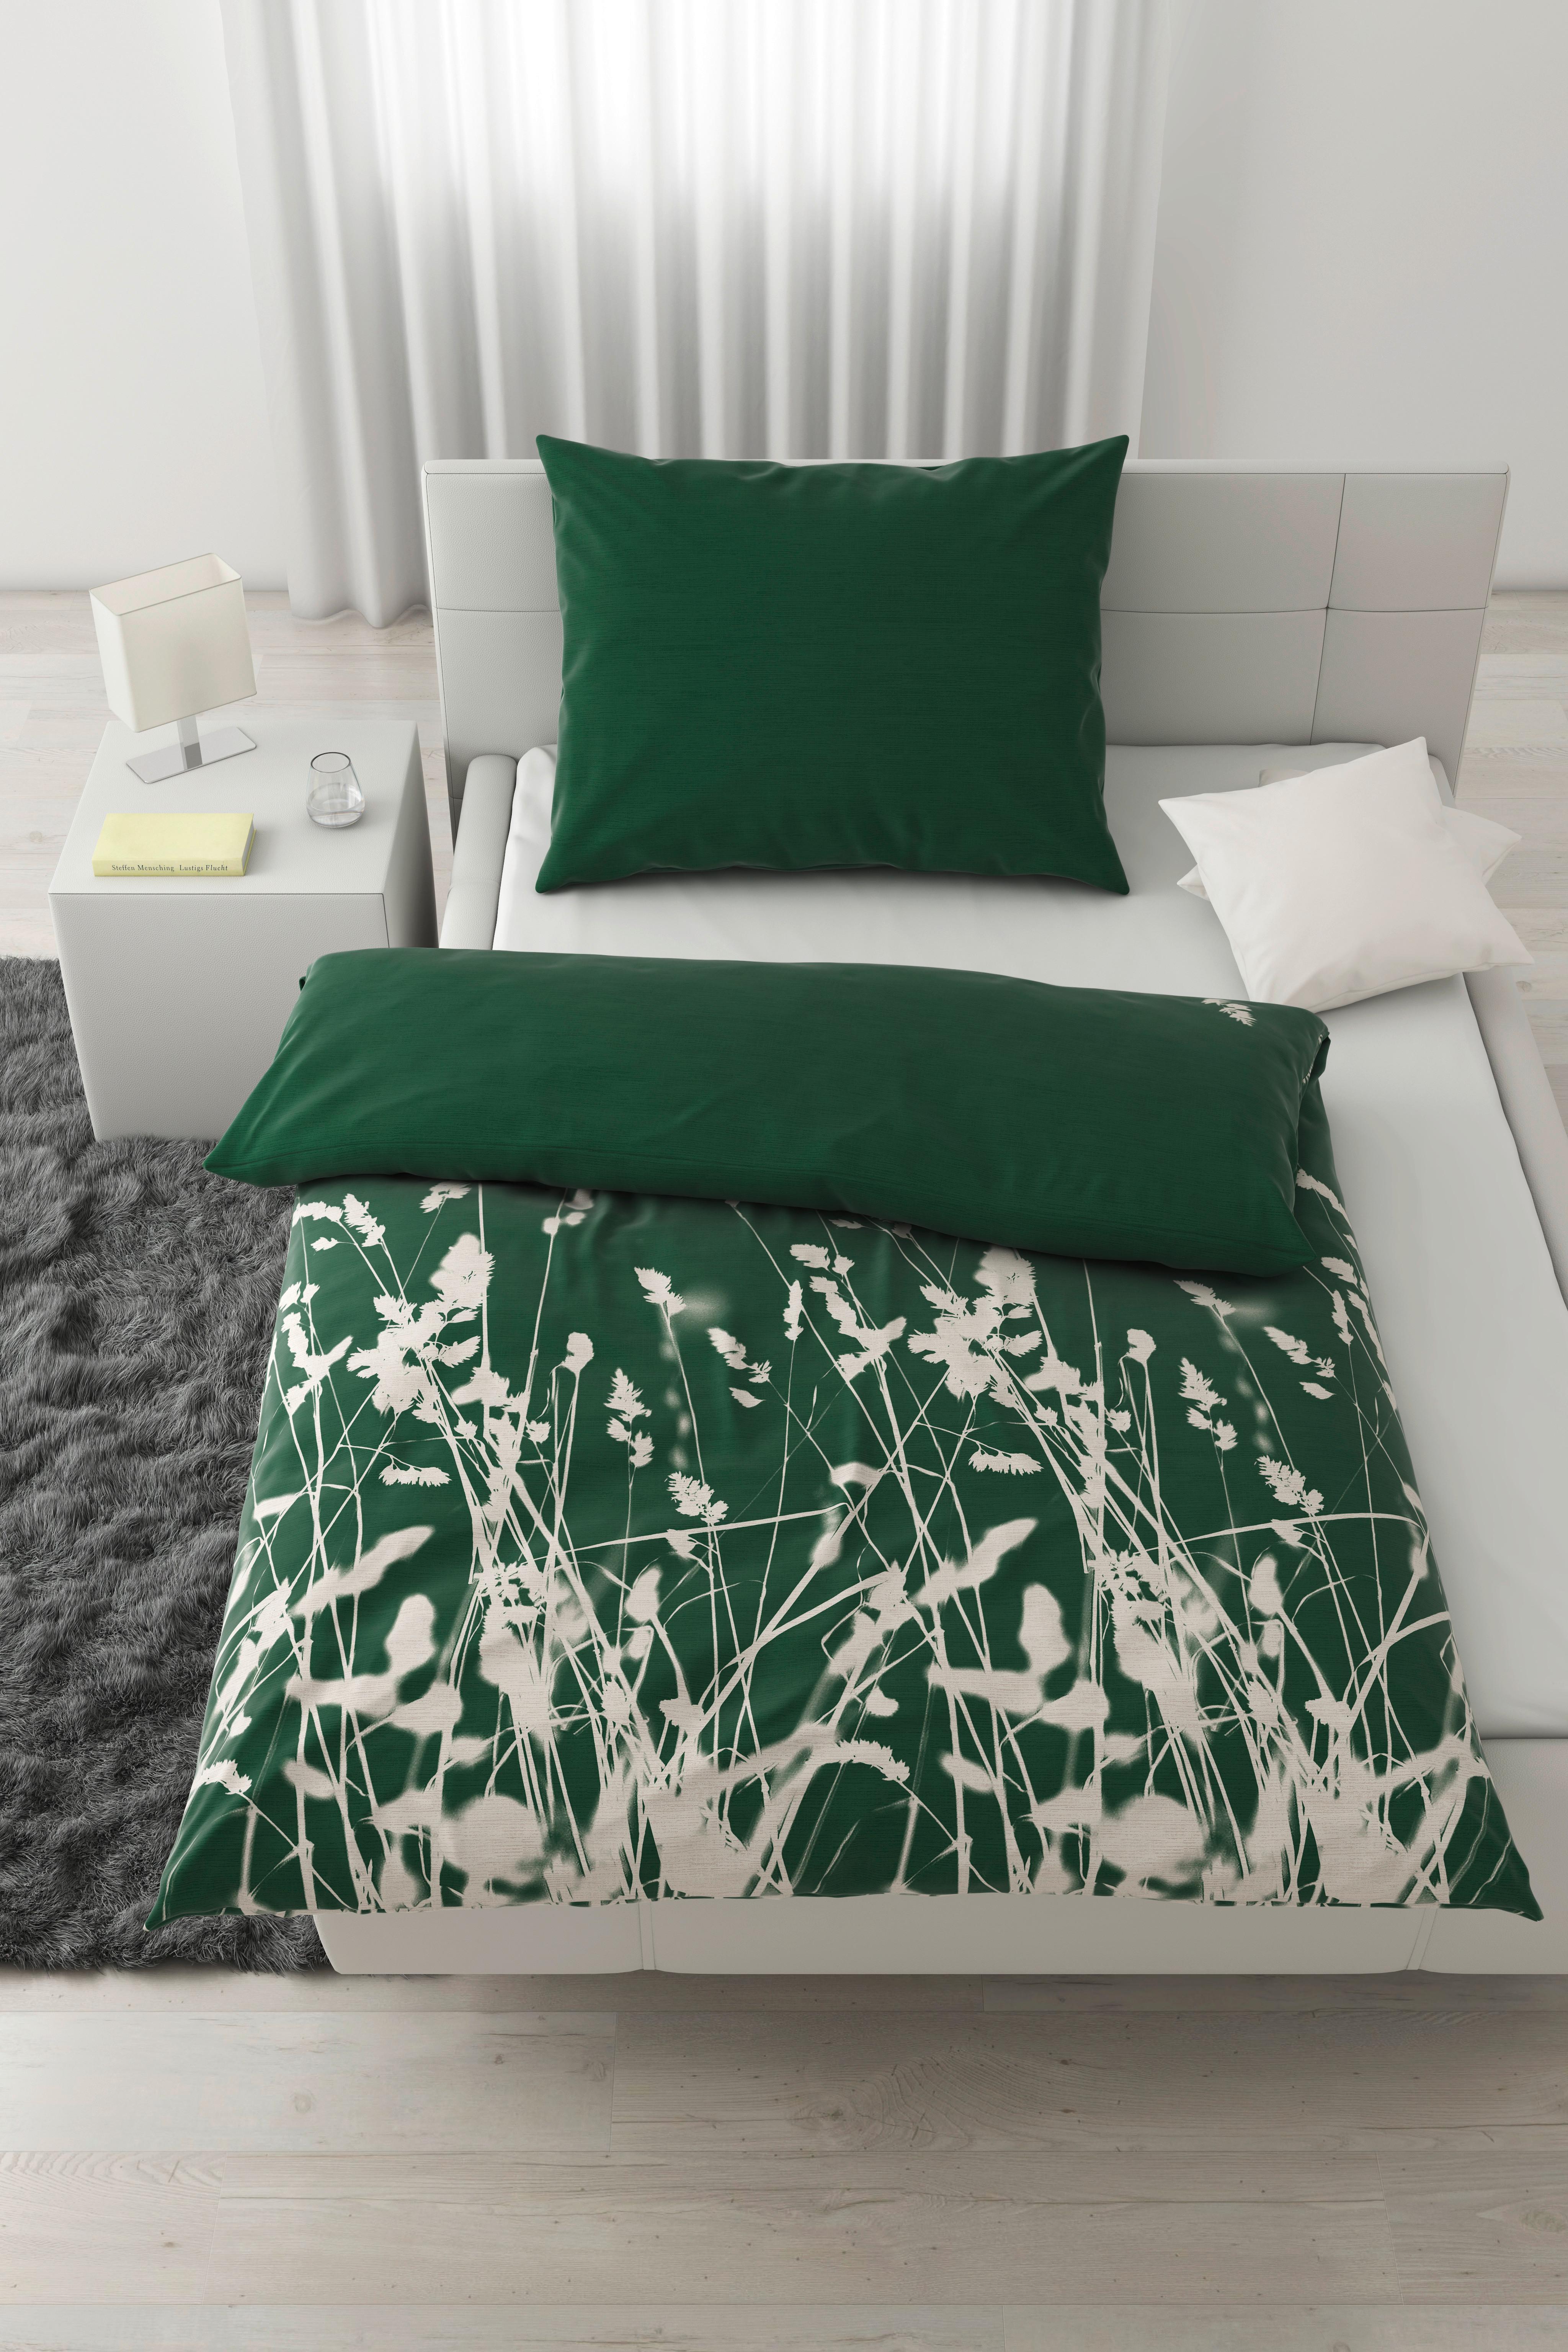 Posteljnina Emilia - zelena, Natur, tekstil (140/200cm) - Modern Living